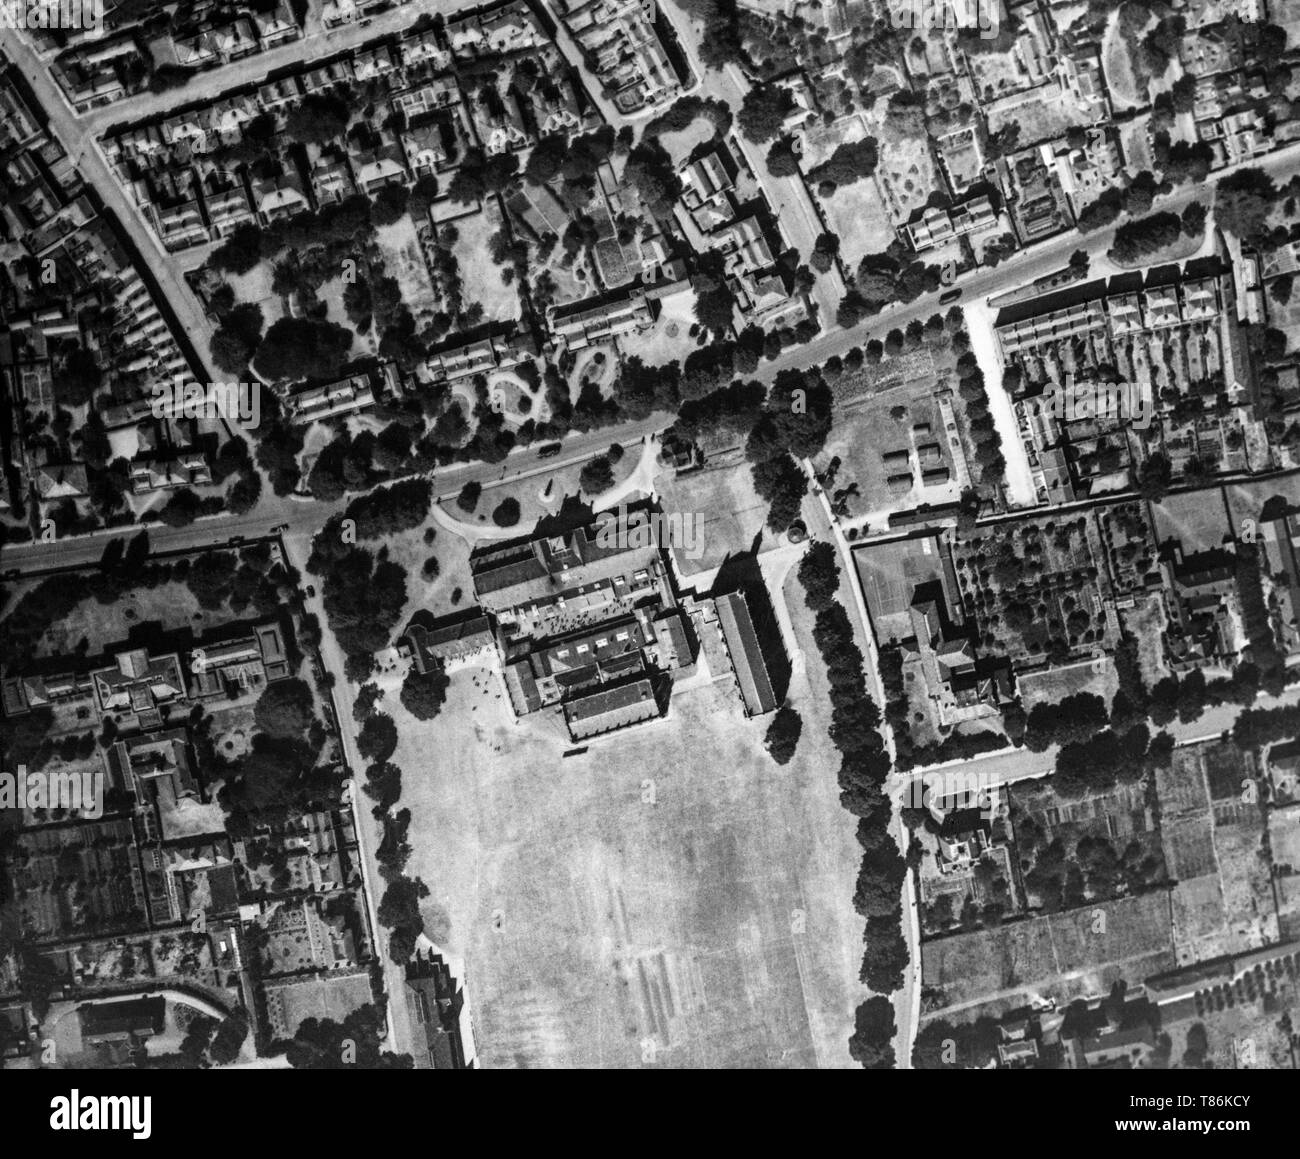 Un noir et blanc photographie aérienne prise le 21 juin 1921 indiquant Cheltenham College, et la région environnante, dans le Gloucestershire, en Angleterre. Banque D'Images